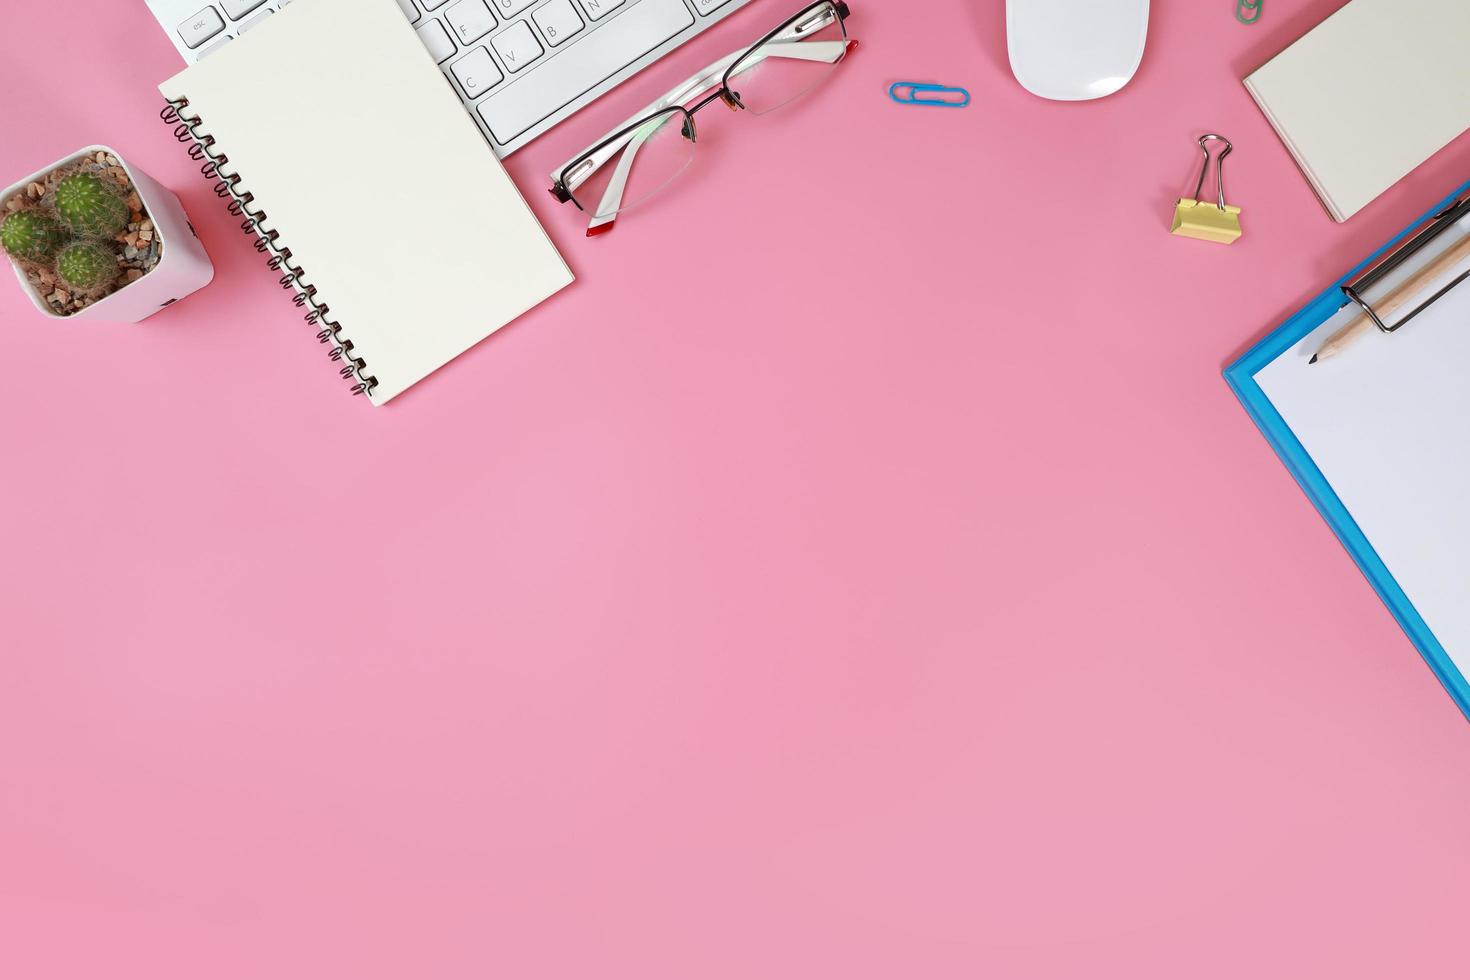 platt liggande arbetsbord med bärbar dator, kontorsmaterial, kaffekopp, mobiltelefon och kaffekopp på rosa bakgrund foto